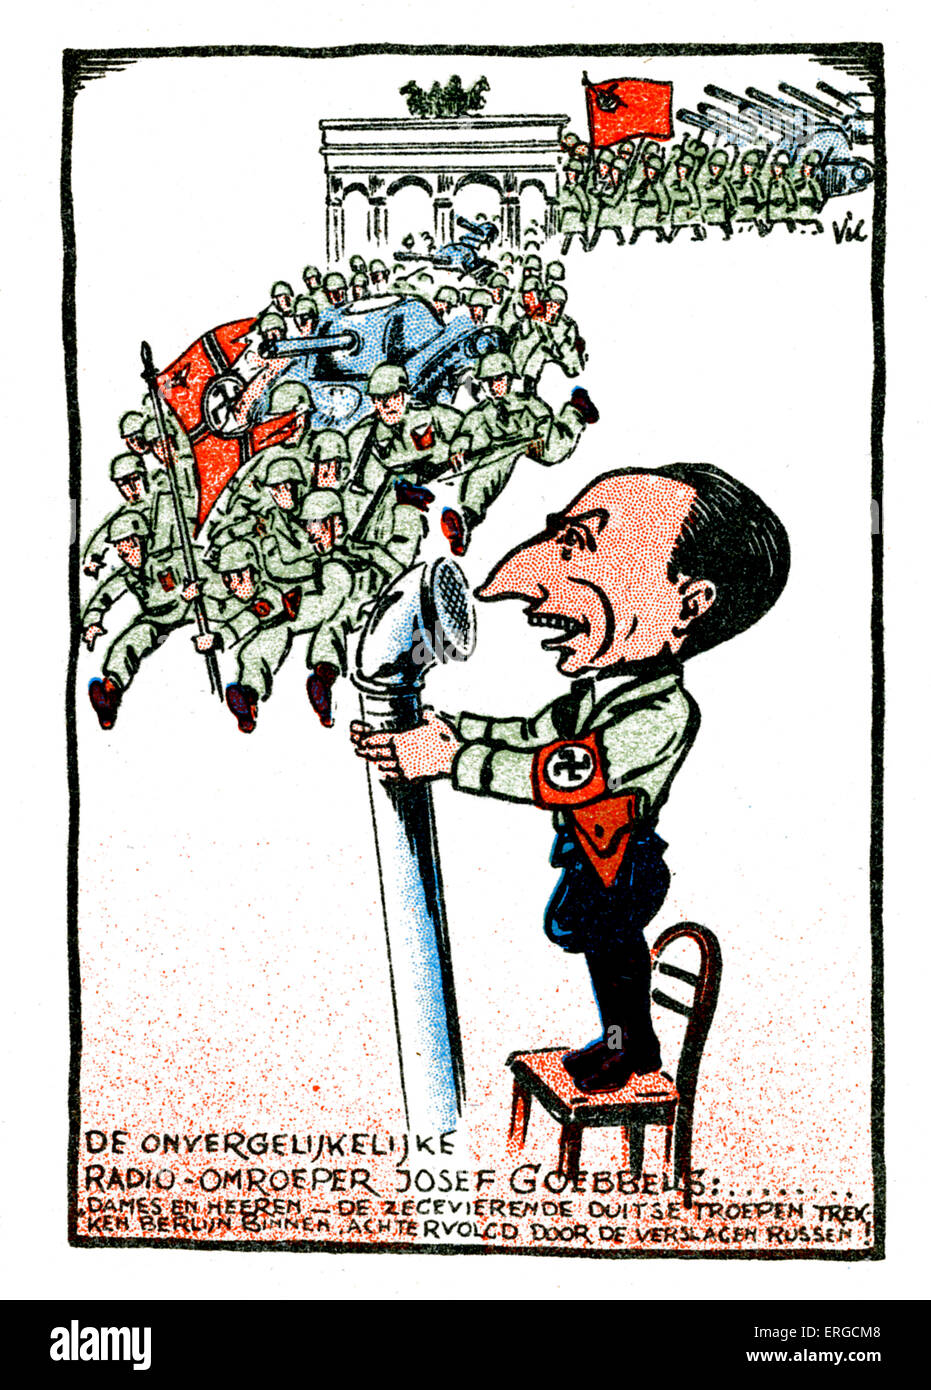 Göbbels - niederländische Karikatur. Joseph Göbbels, deutscher NS-Politiker und Minister für Propaganda: 29. Mai 1897 – 1. Oktober 1945. Stockfoto